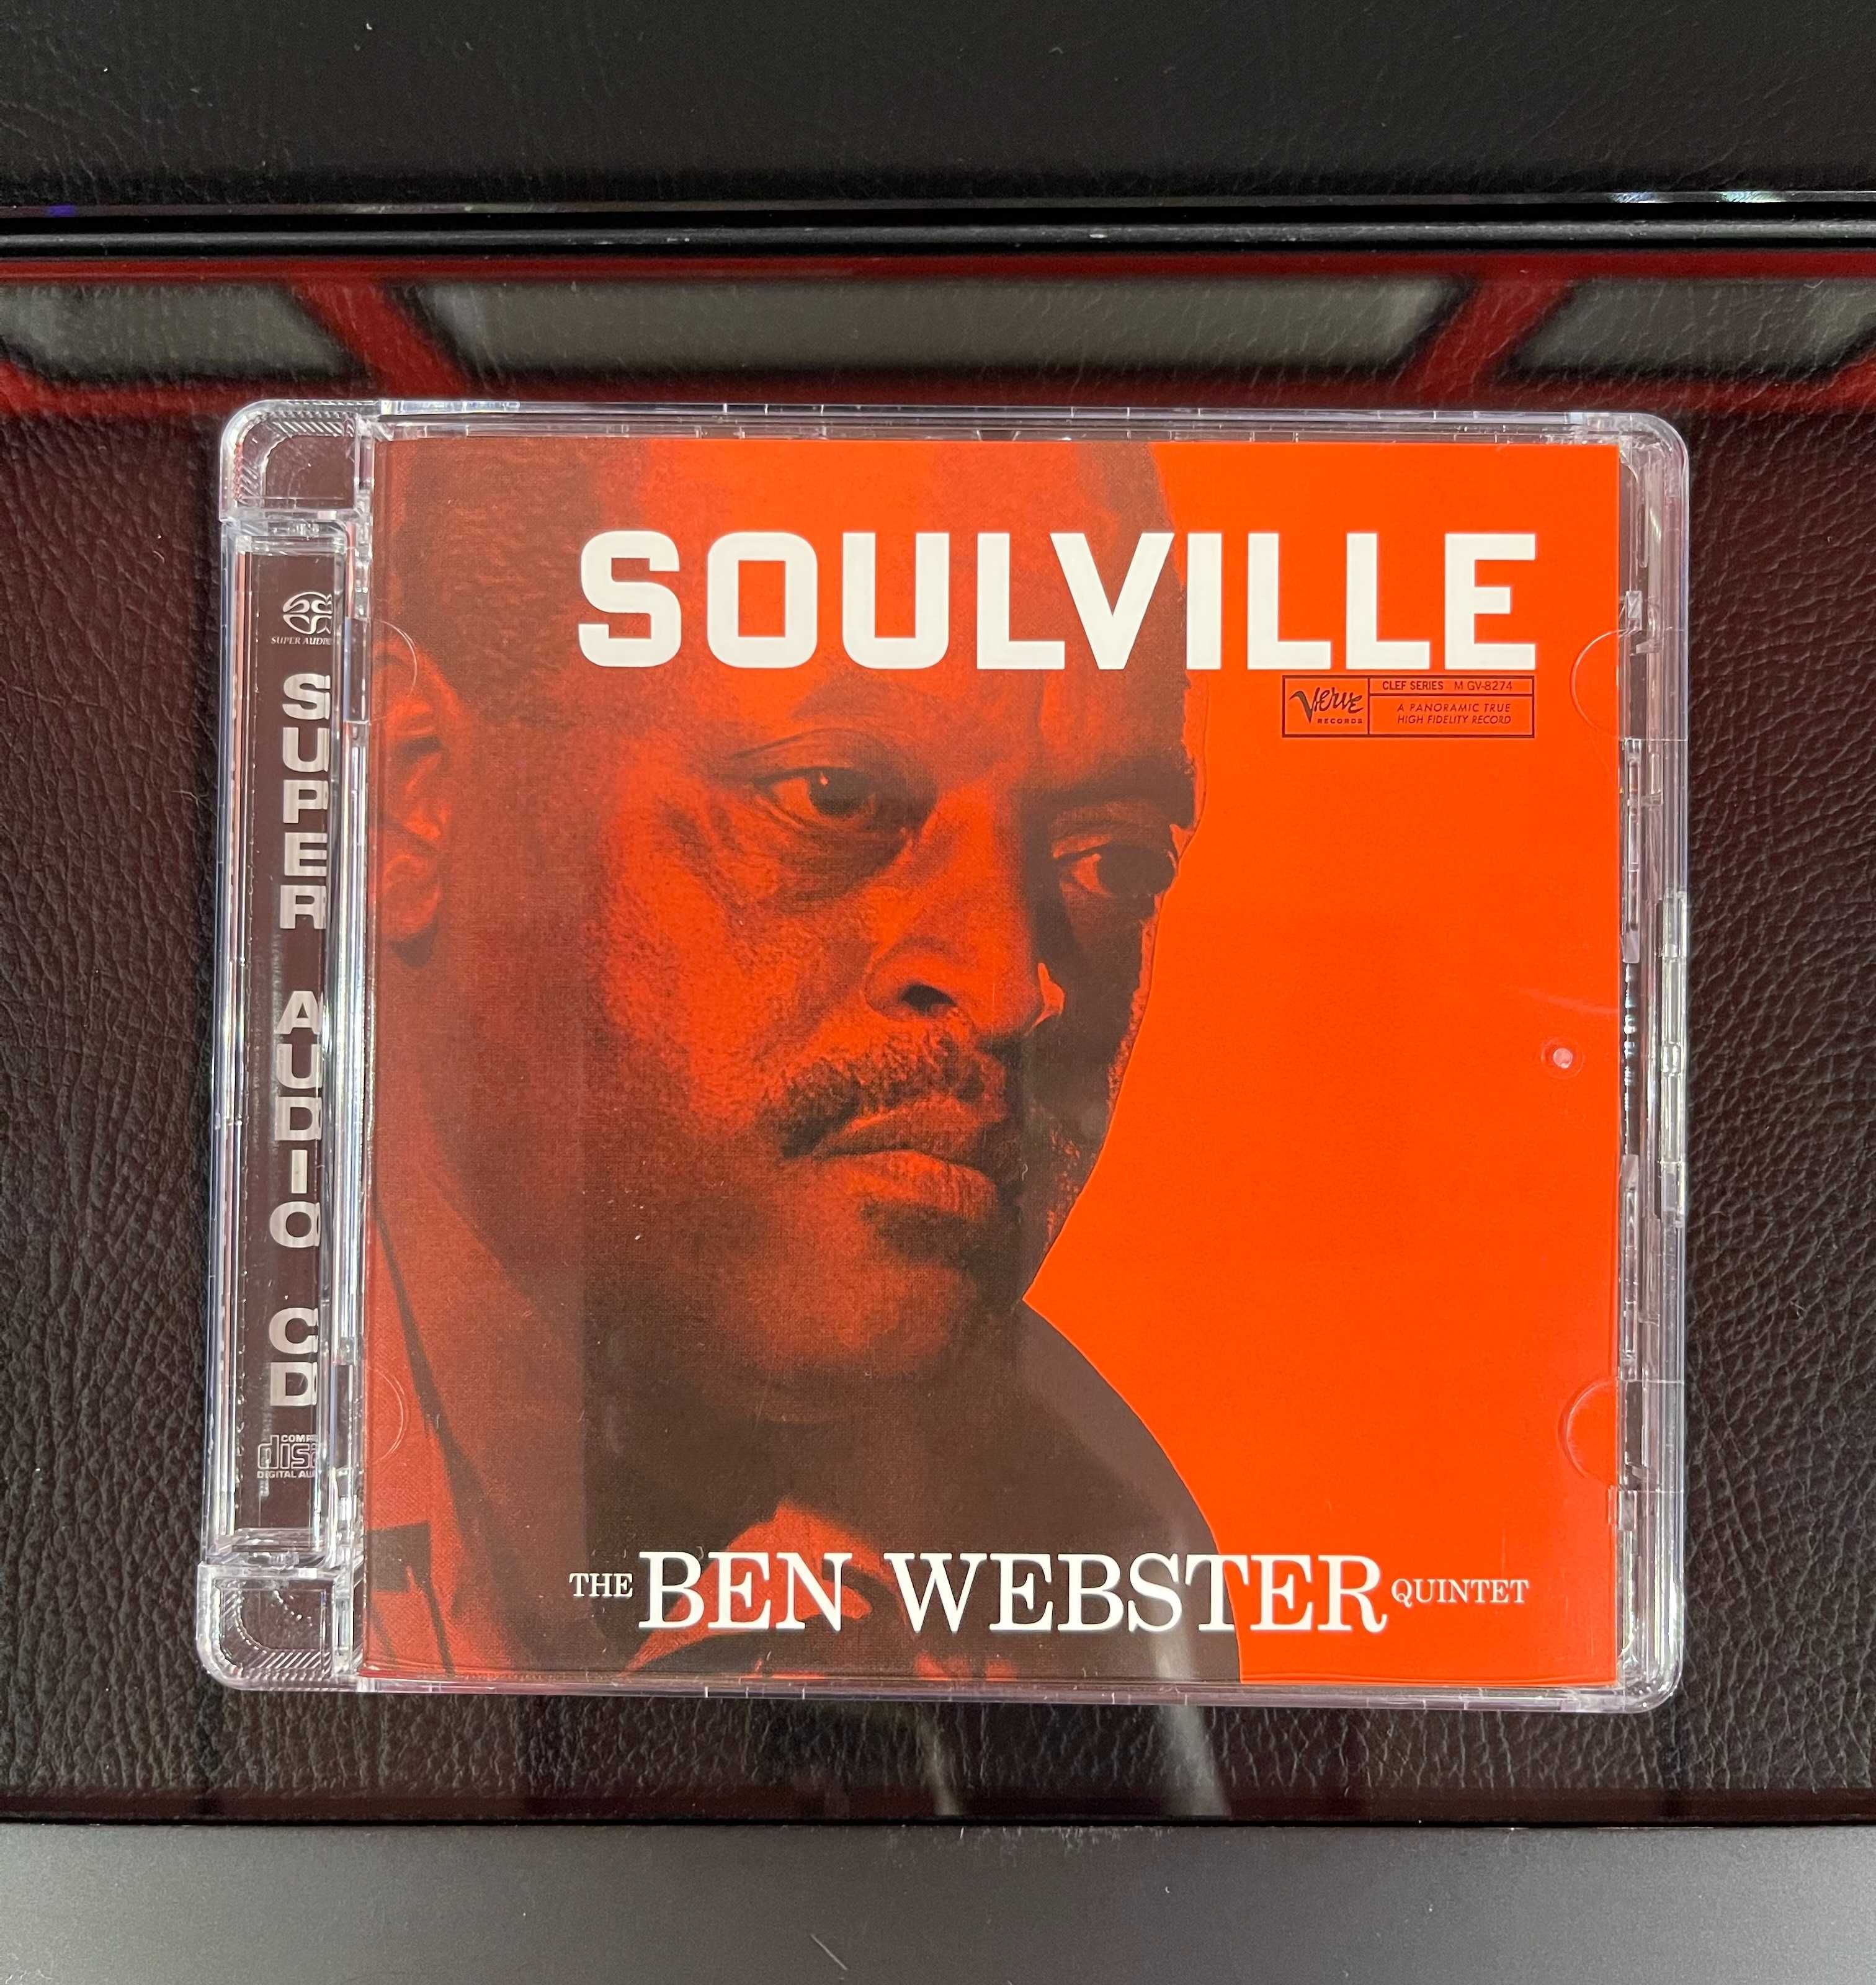 CD SACD The Ben Webster Quintet – Soulville